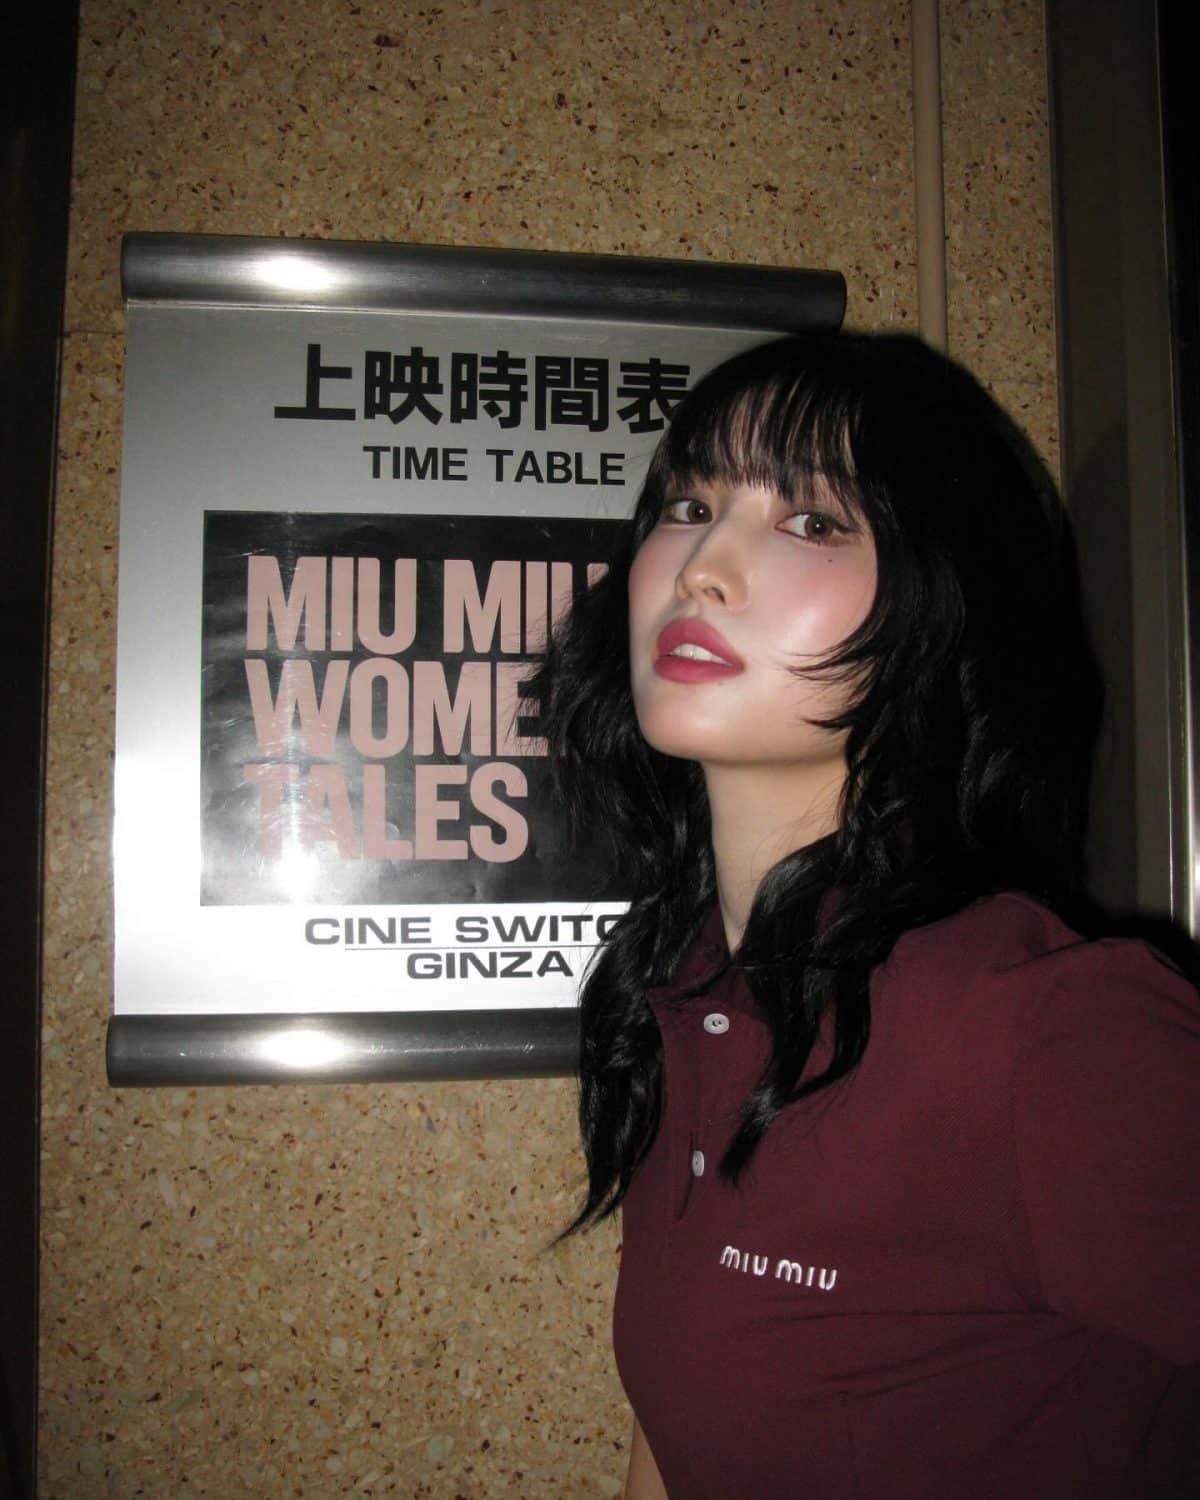 Момо из TWICE посетила кинопоказ Miu Miu в Японии, поразив фанатов своим телосложением